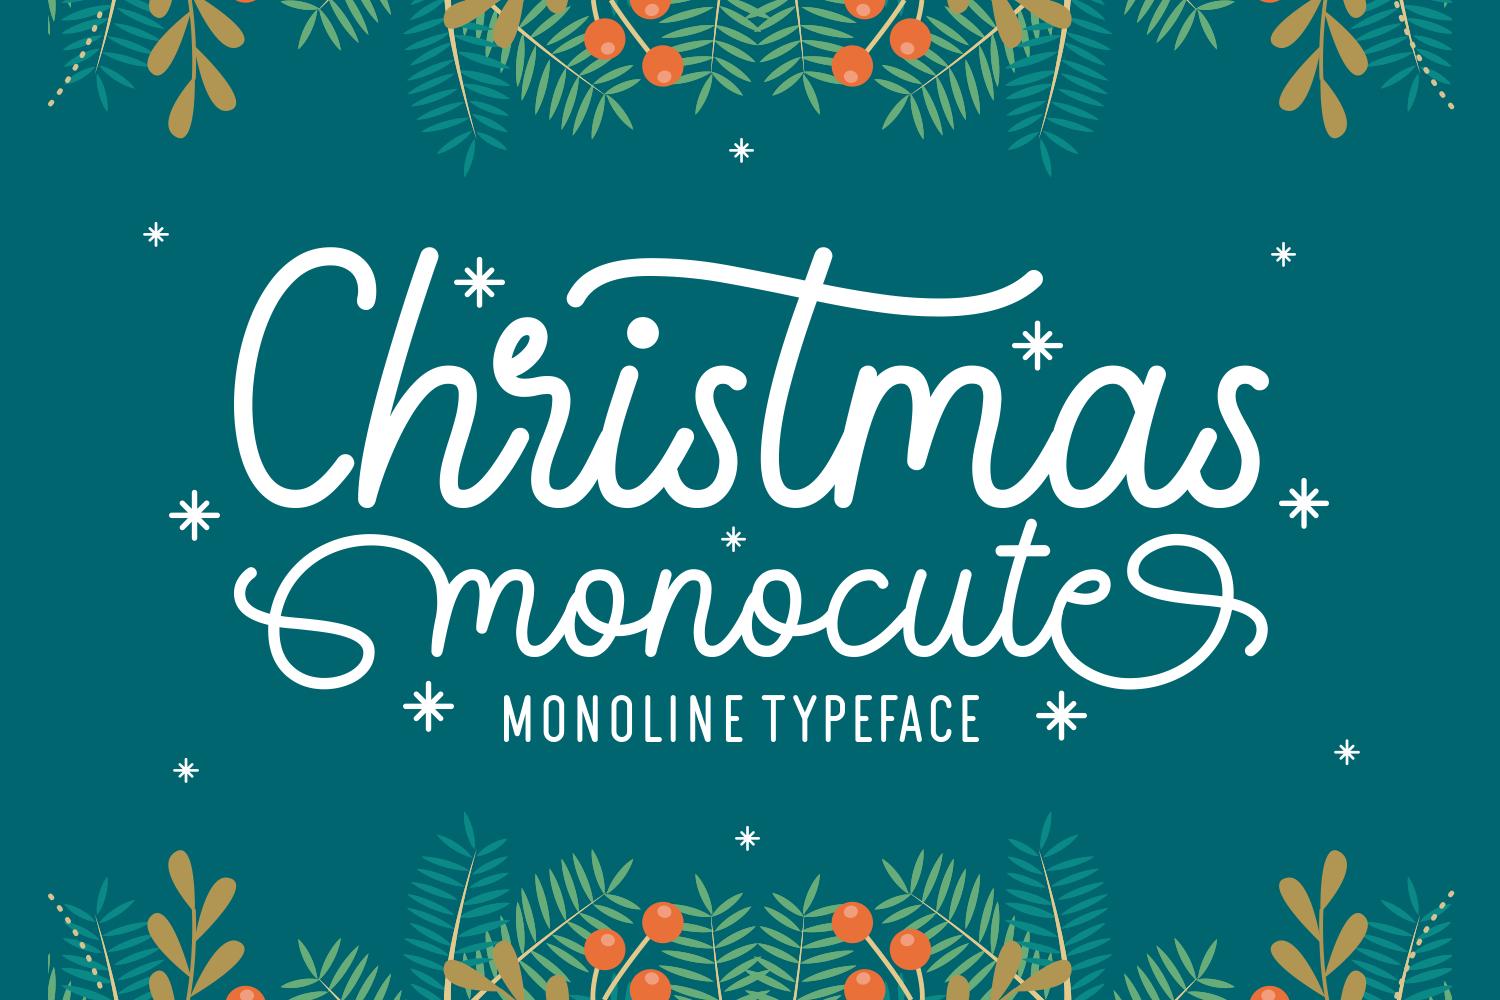 Christmas Monocute Font